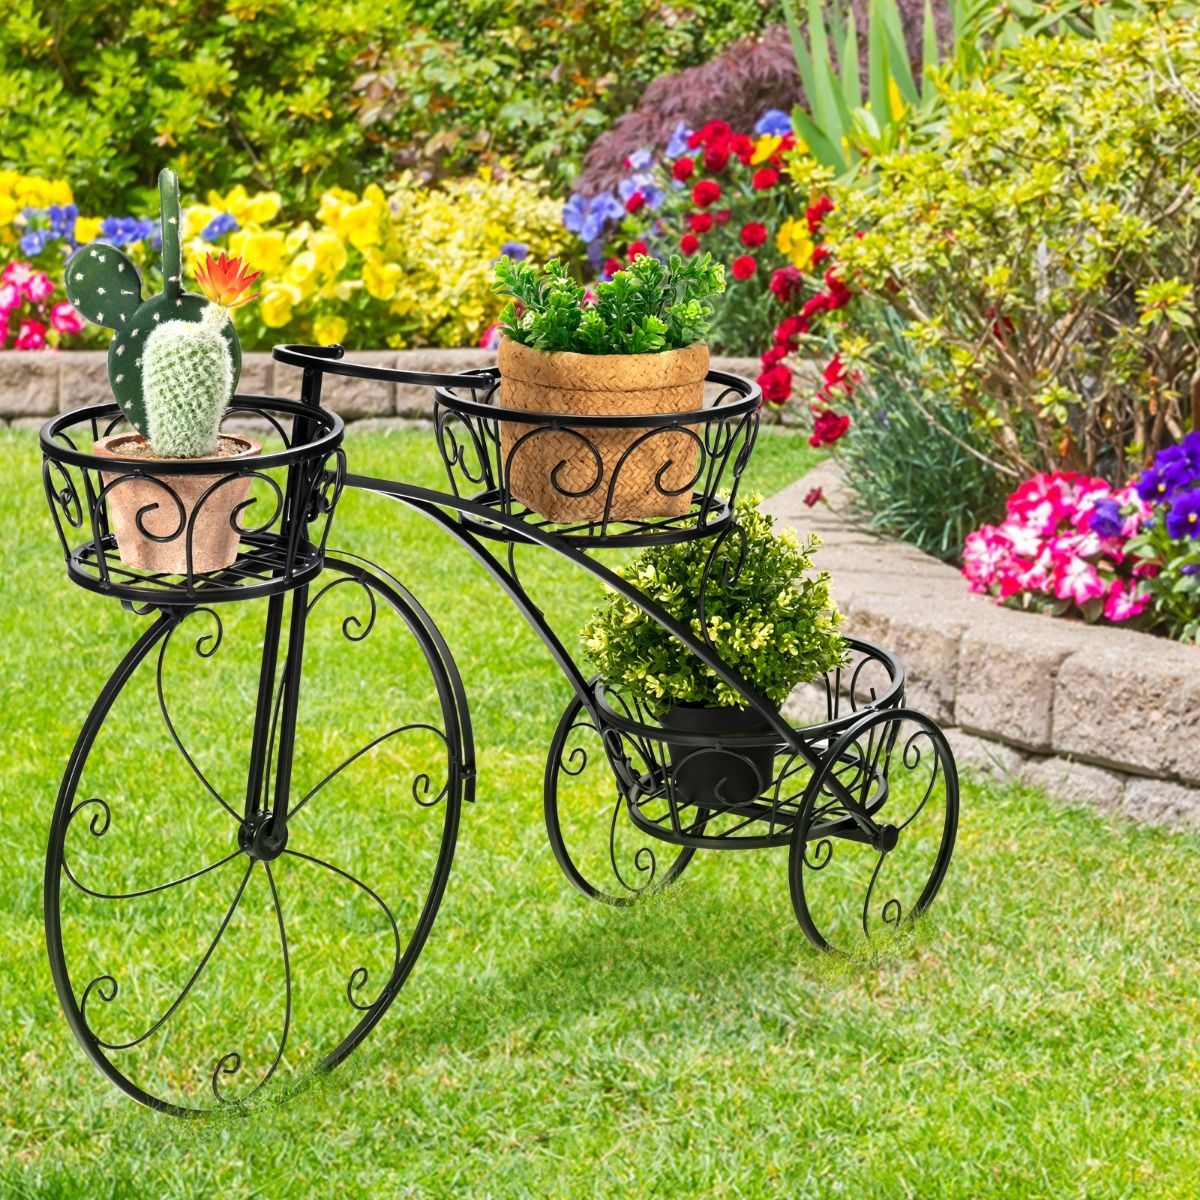 Pflanzenregal, Blumenregal, Dreirad-Pflanzenständer, Fahrrad-Pflanzenhalter im Pariser Stil 80 x 52 cm, Schwarz, Costway